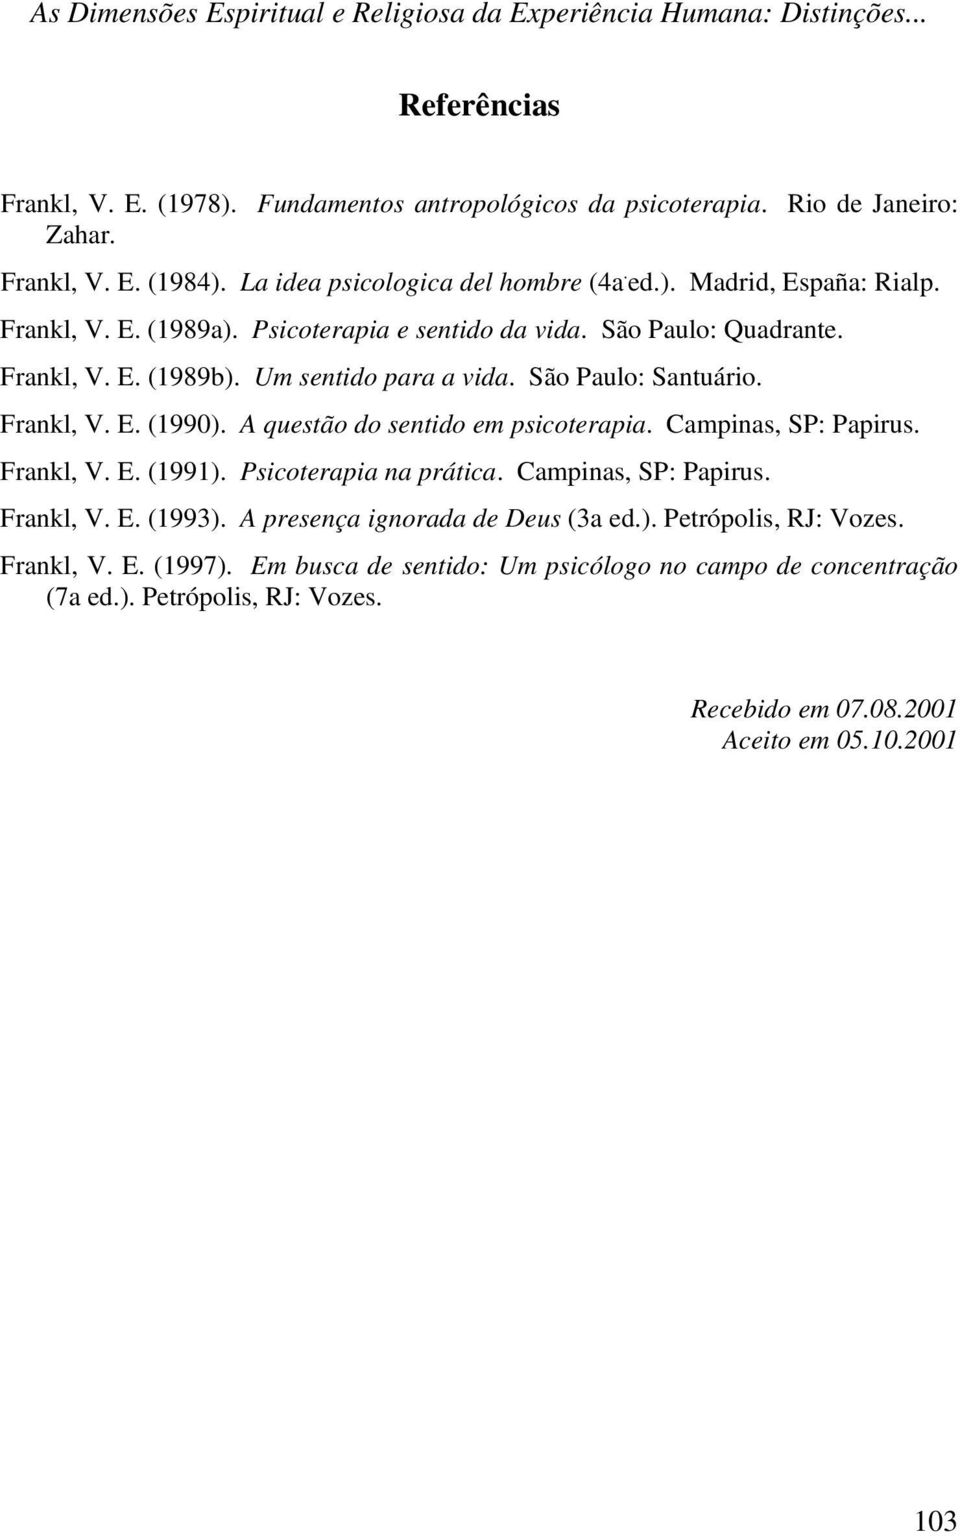 São Paulo: Santuário. Frankl, V. E. (1990). A questão do sentido em psicoterapia. Campinas, SP: Papirus. Frankl, V. E. (1991). Psicoterapia na prática. Campinas, SP: Papirus. Frankl, V. E. (1993).